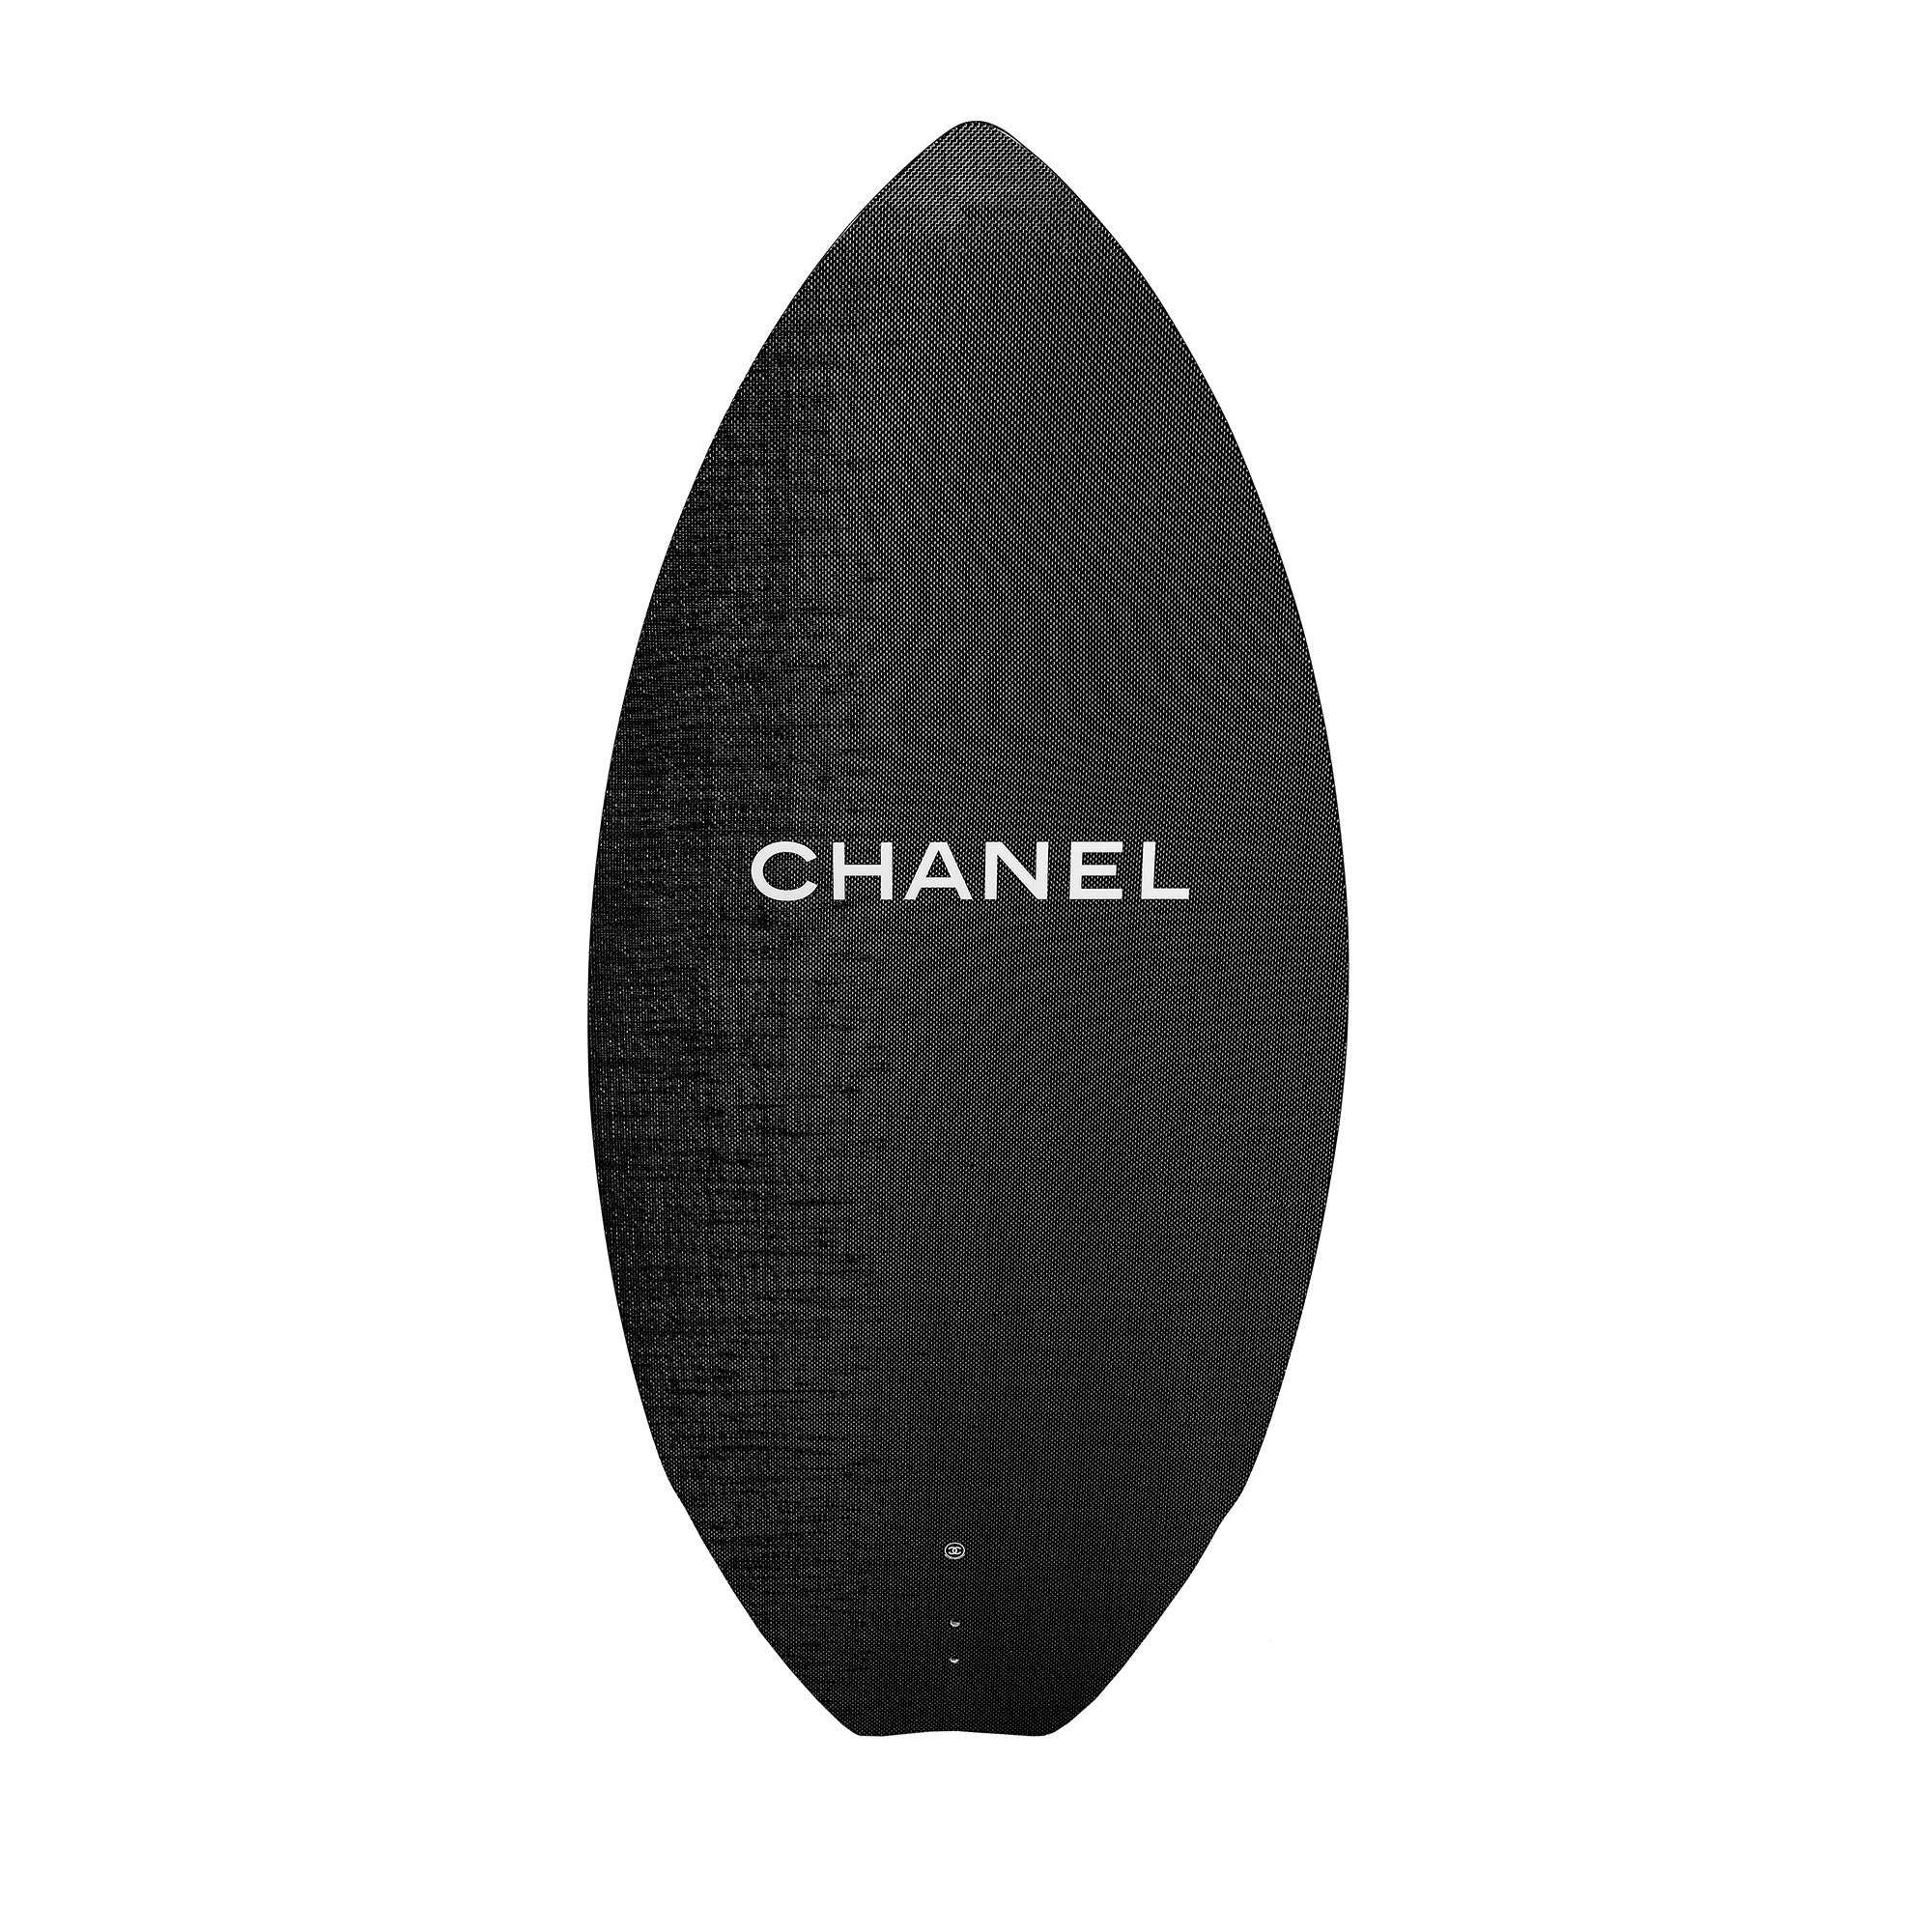 Wenn Sie Surfen und Mode lieben, dürfen Sie sich dieses Chanel Surfboard 2015 nicht entgehen lassen. Er besteht aus hochwertigen Materialien wie Karbonfaser, Polyurethan und Glasfaser und trägt das ikonische, ineinander greifende CC-Logo sowie das